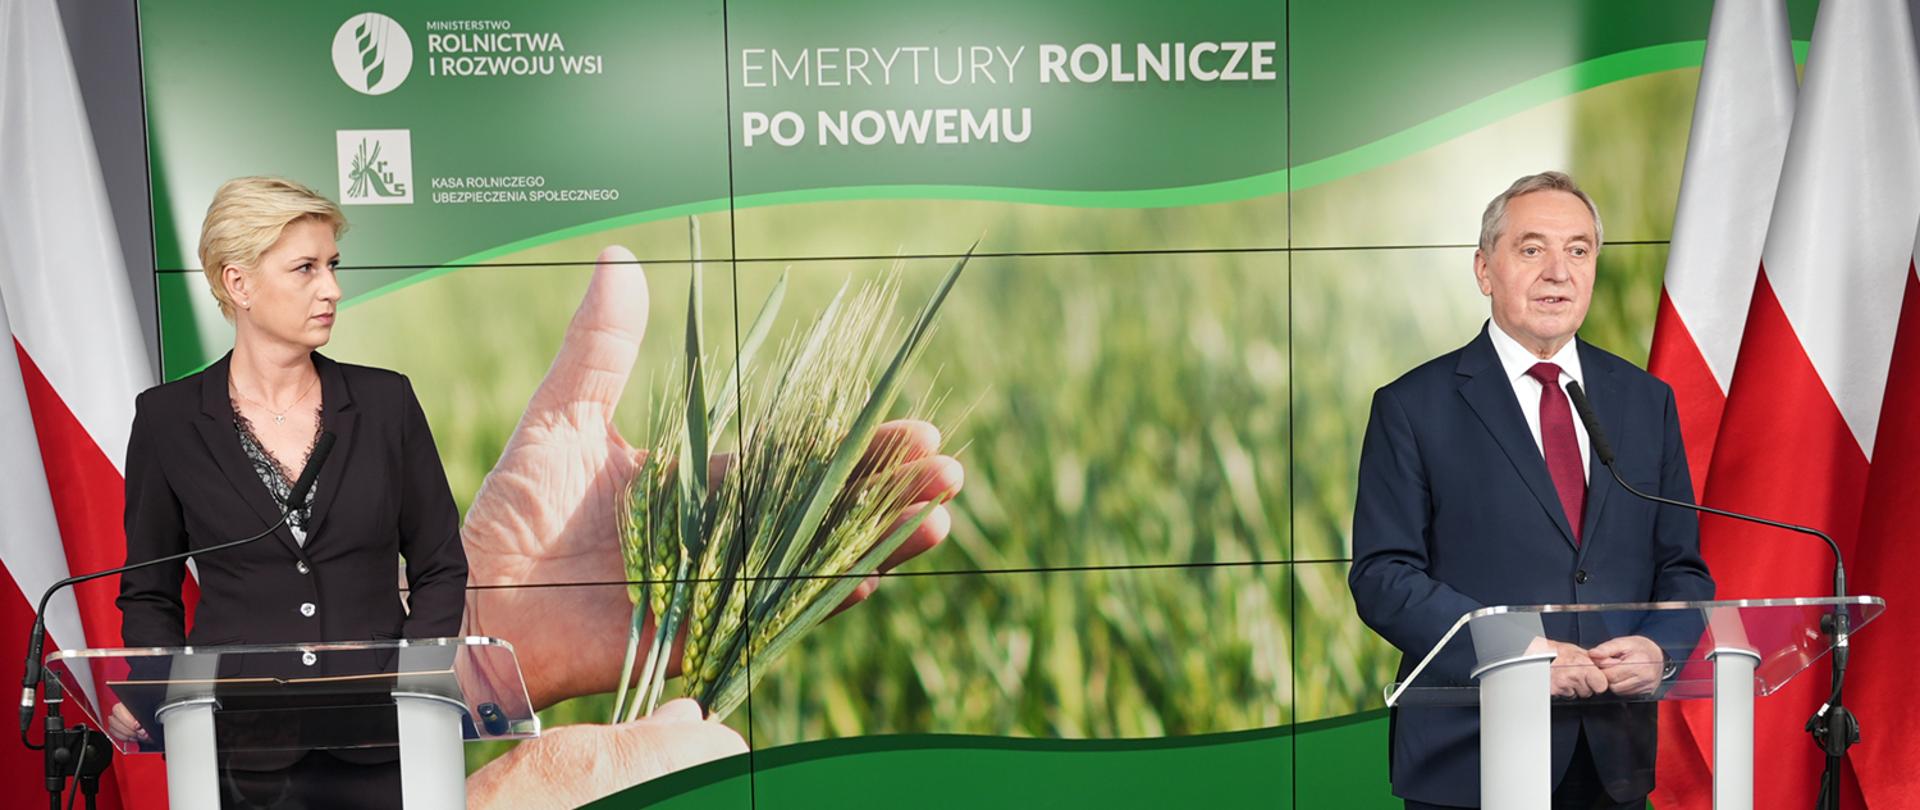 Wicepremier, minister rolnictwa i rozwoju wsi Henryk Kowalczyk oraz prezes Kasy Rolniczego Ubezpieczenia Społecznego przedstawili dziś zmiany w zasadach wypłacania rolniczych emerytur.